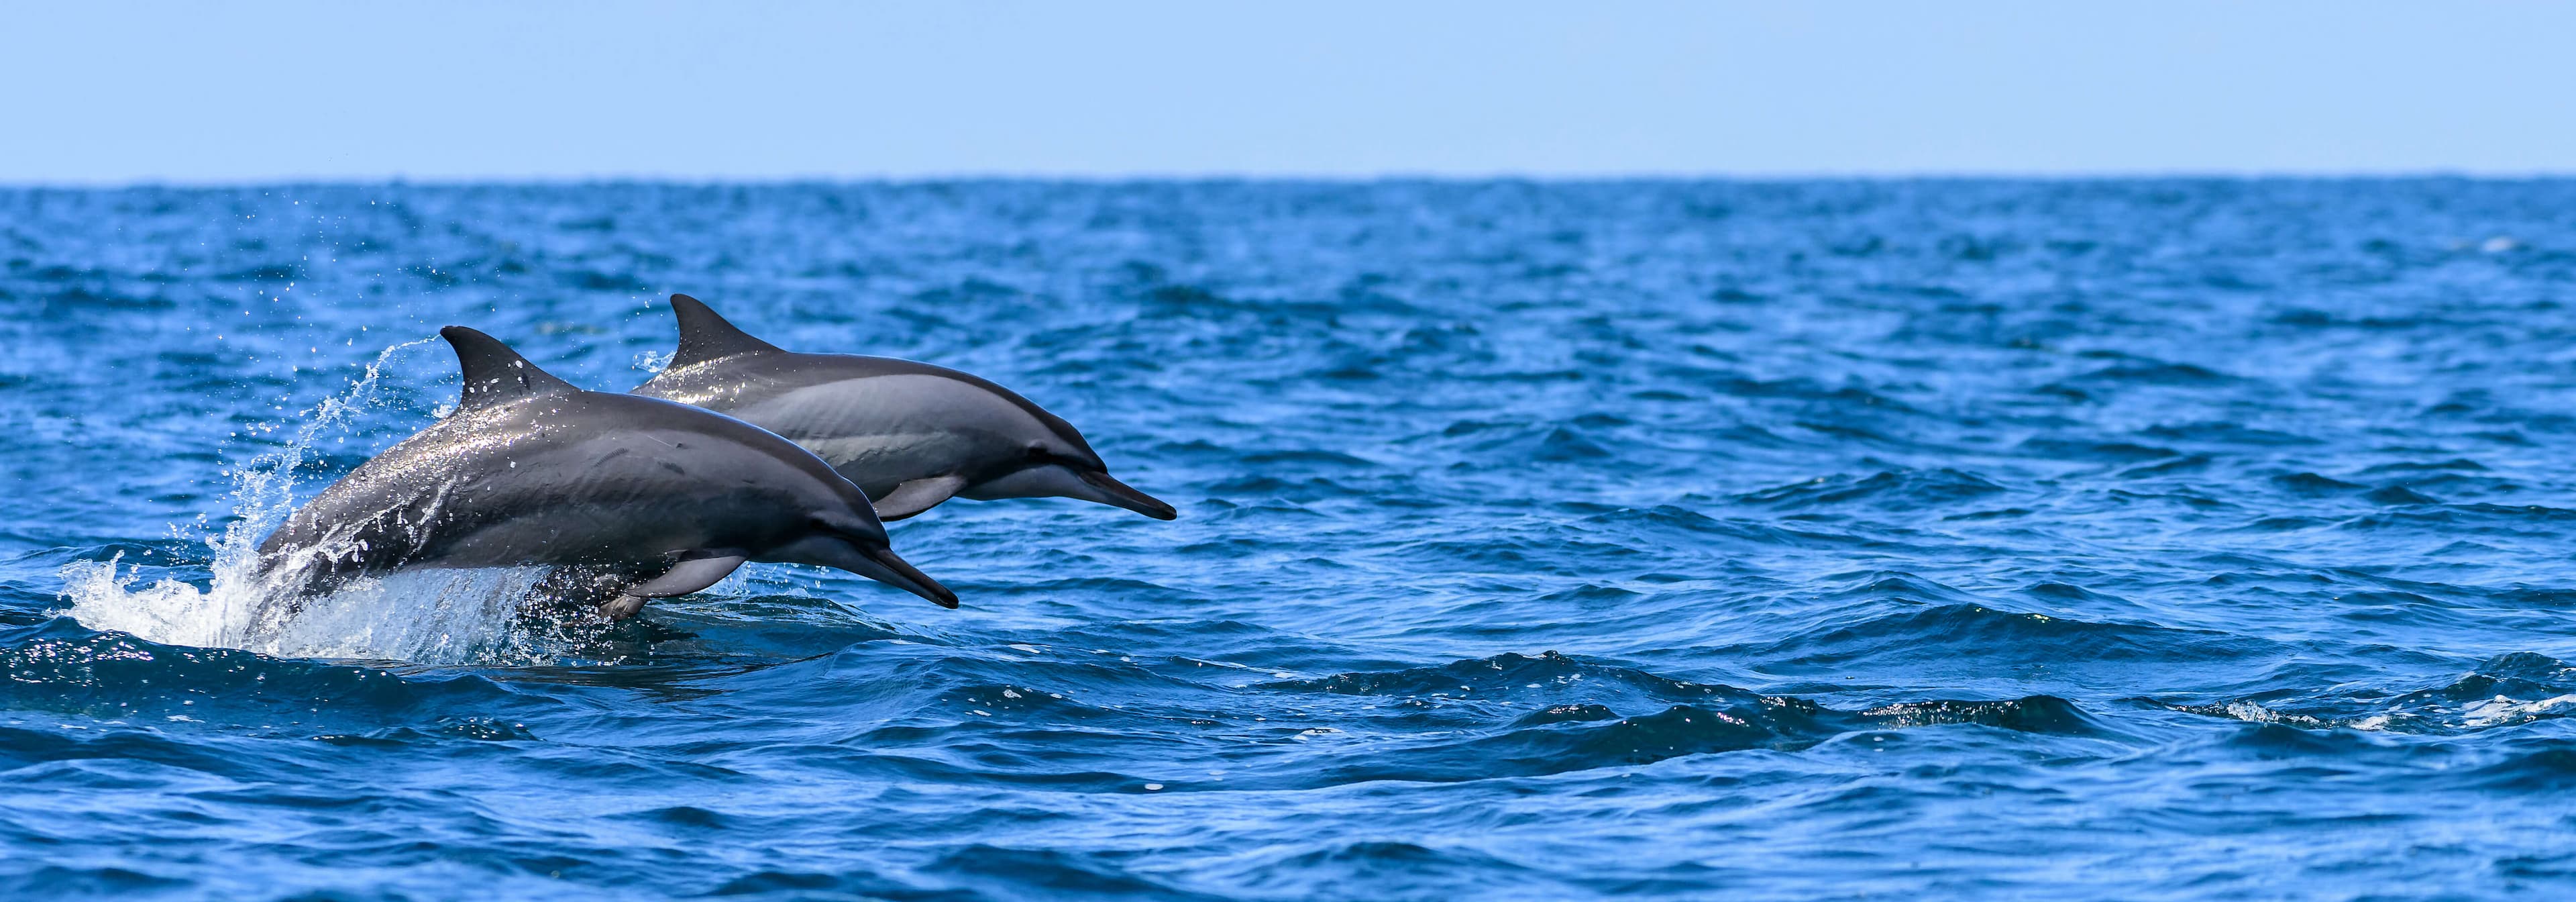 الدلافين الدوارة تقفز من الماء قبالة ساحل كالبيتيا ، سريلانكا.